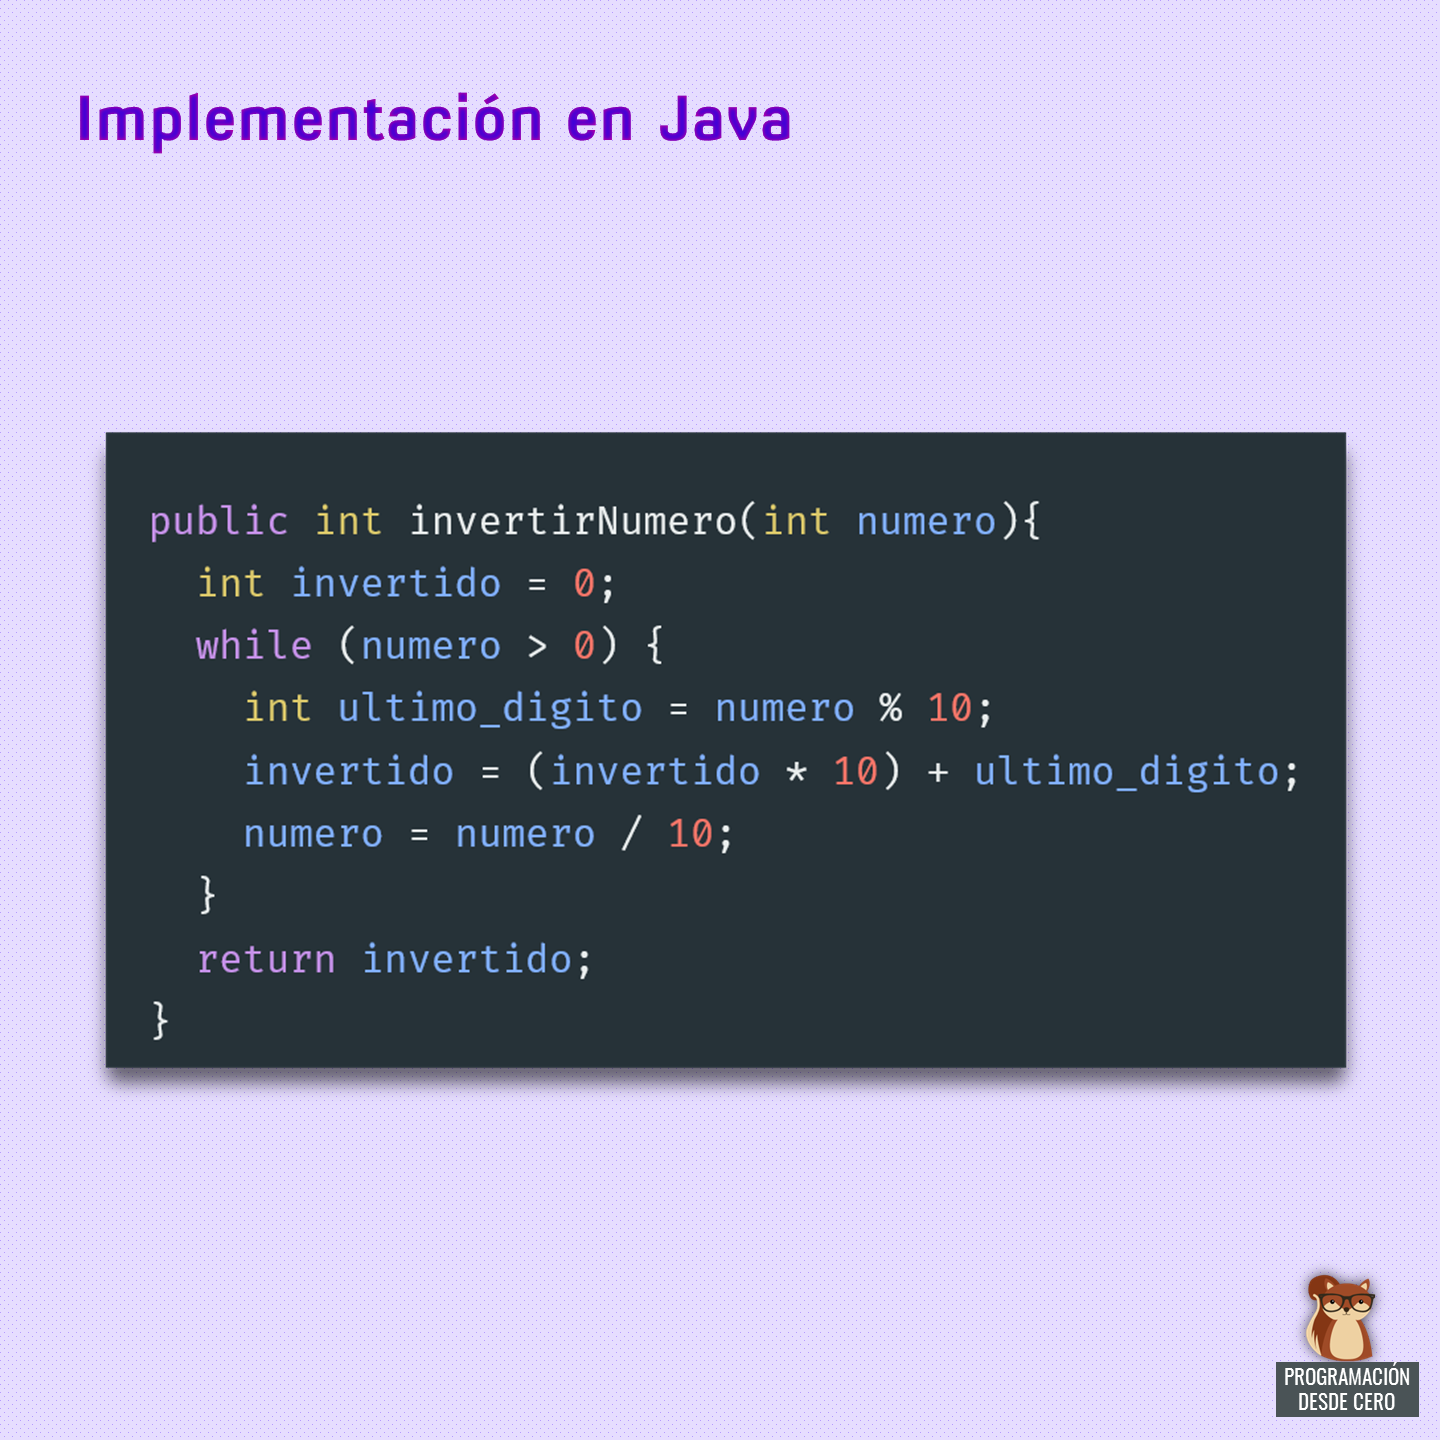 Algoritmo para invertir un numero entero, en Java